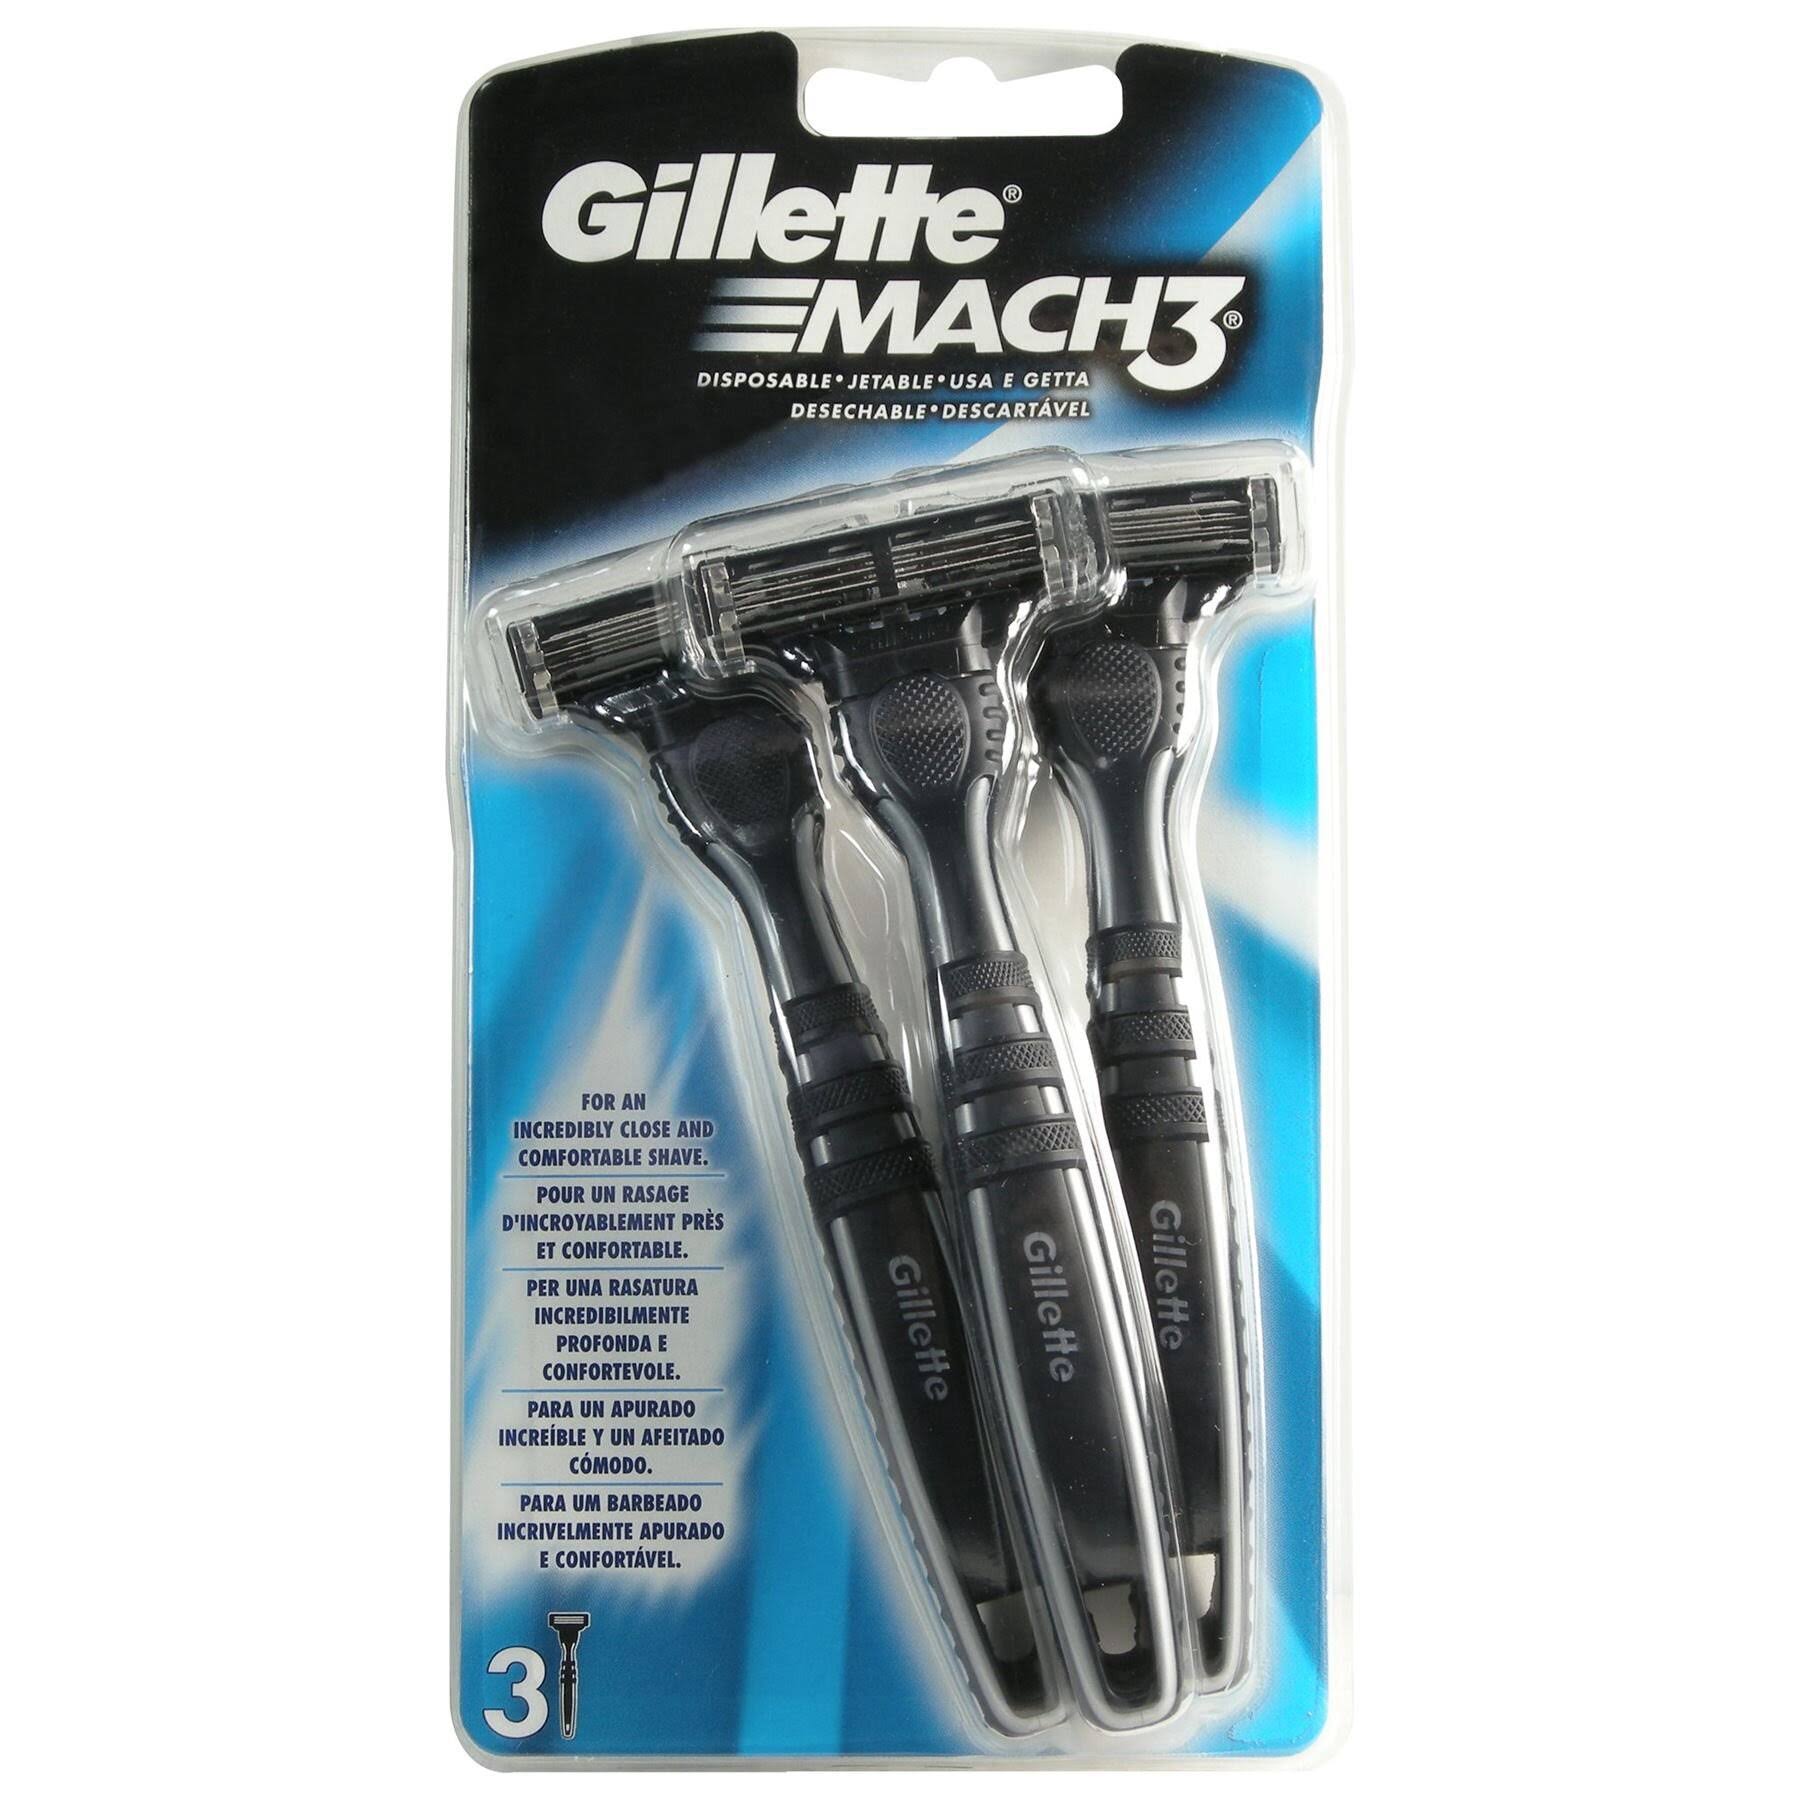 Gillette Mach3 Men's Disposable Razors - 3 Pack